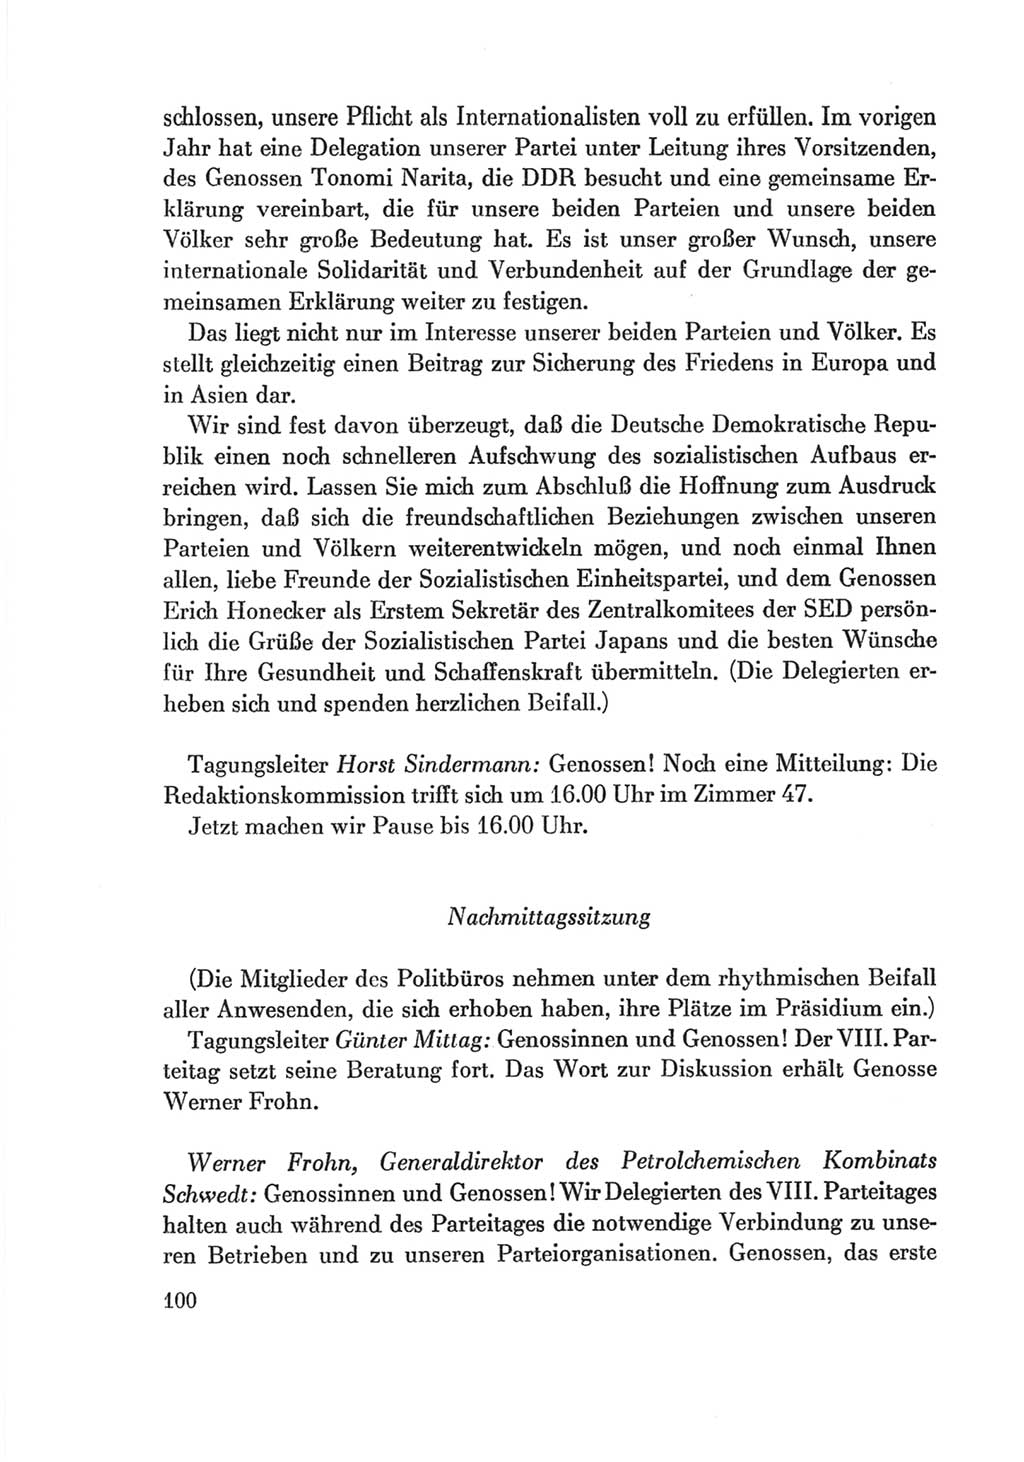 Protokoll der Verhandlungen des Ⅷ. Parteitages der Sozialistischen Einheitspartei Deutschlands (SED) [Deutsche Demokratische Republik (DDR)] 1971, Band 2, Seite 100 (Prot. Verh. Ⅷ. PT SED DDR 1971, Bd. 2, S. 100)